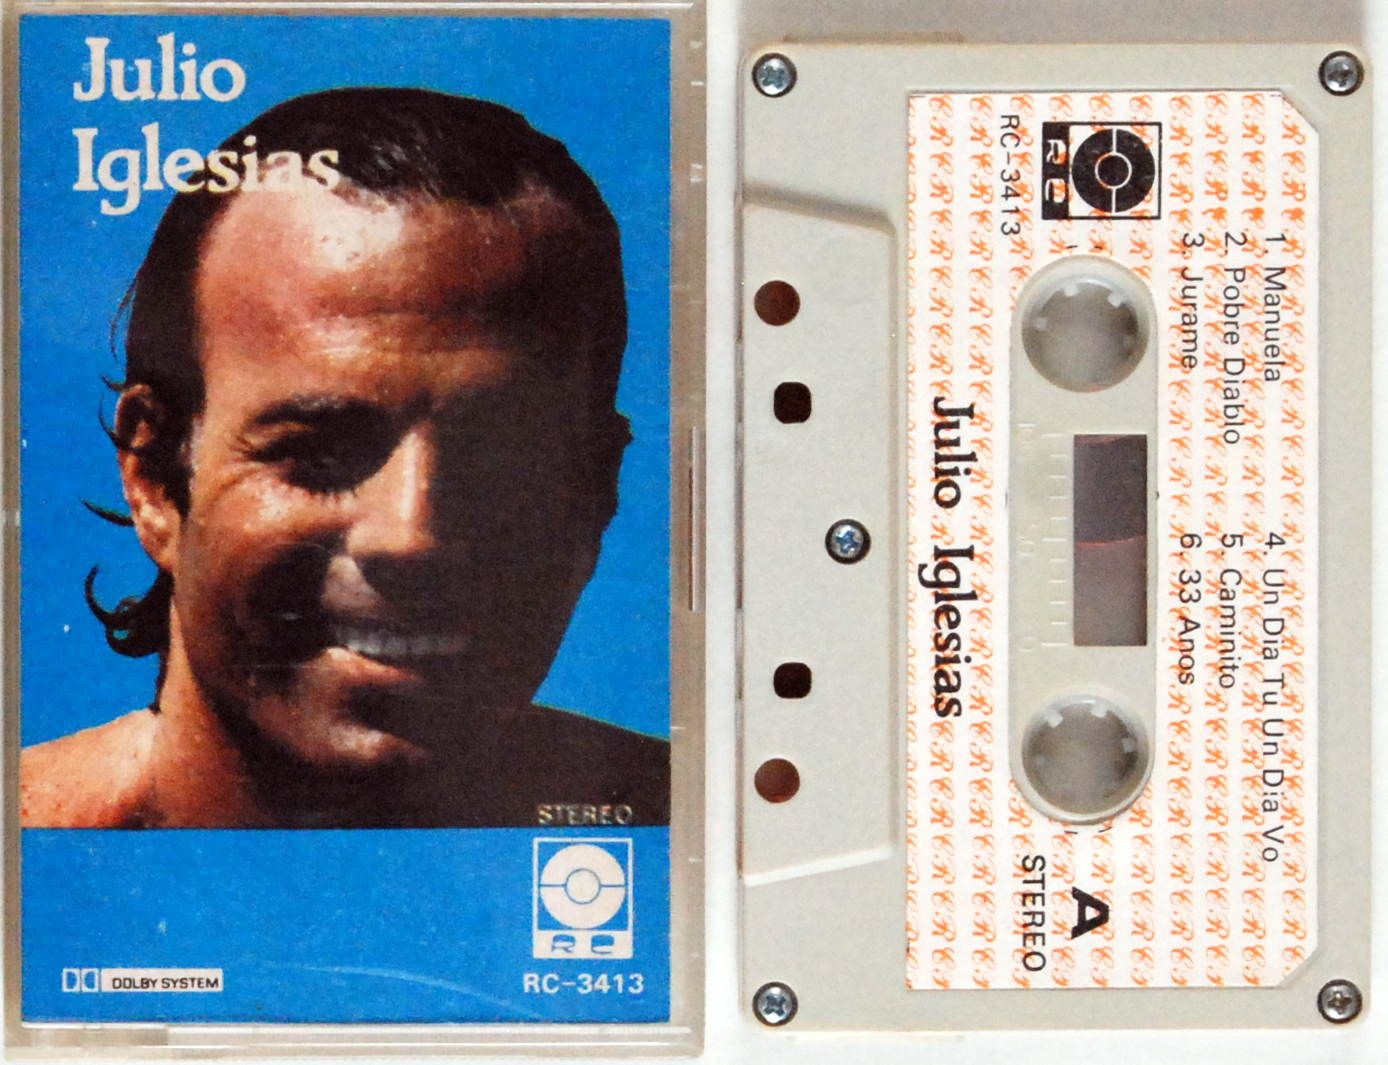 Julio Iglesias - Julio Iglesias (kaseta) BDB